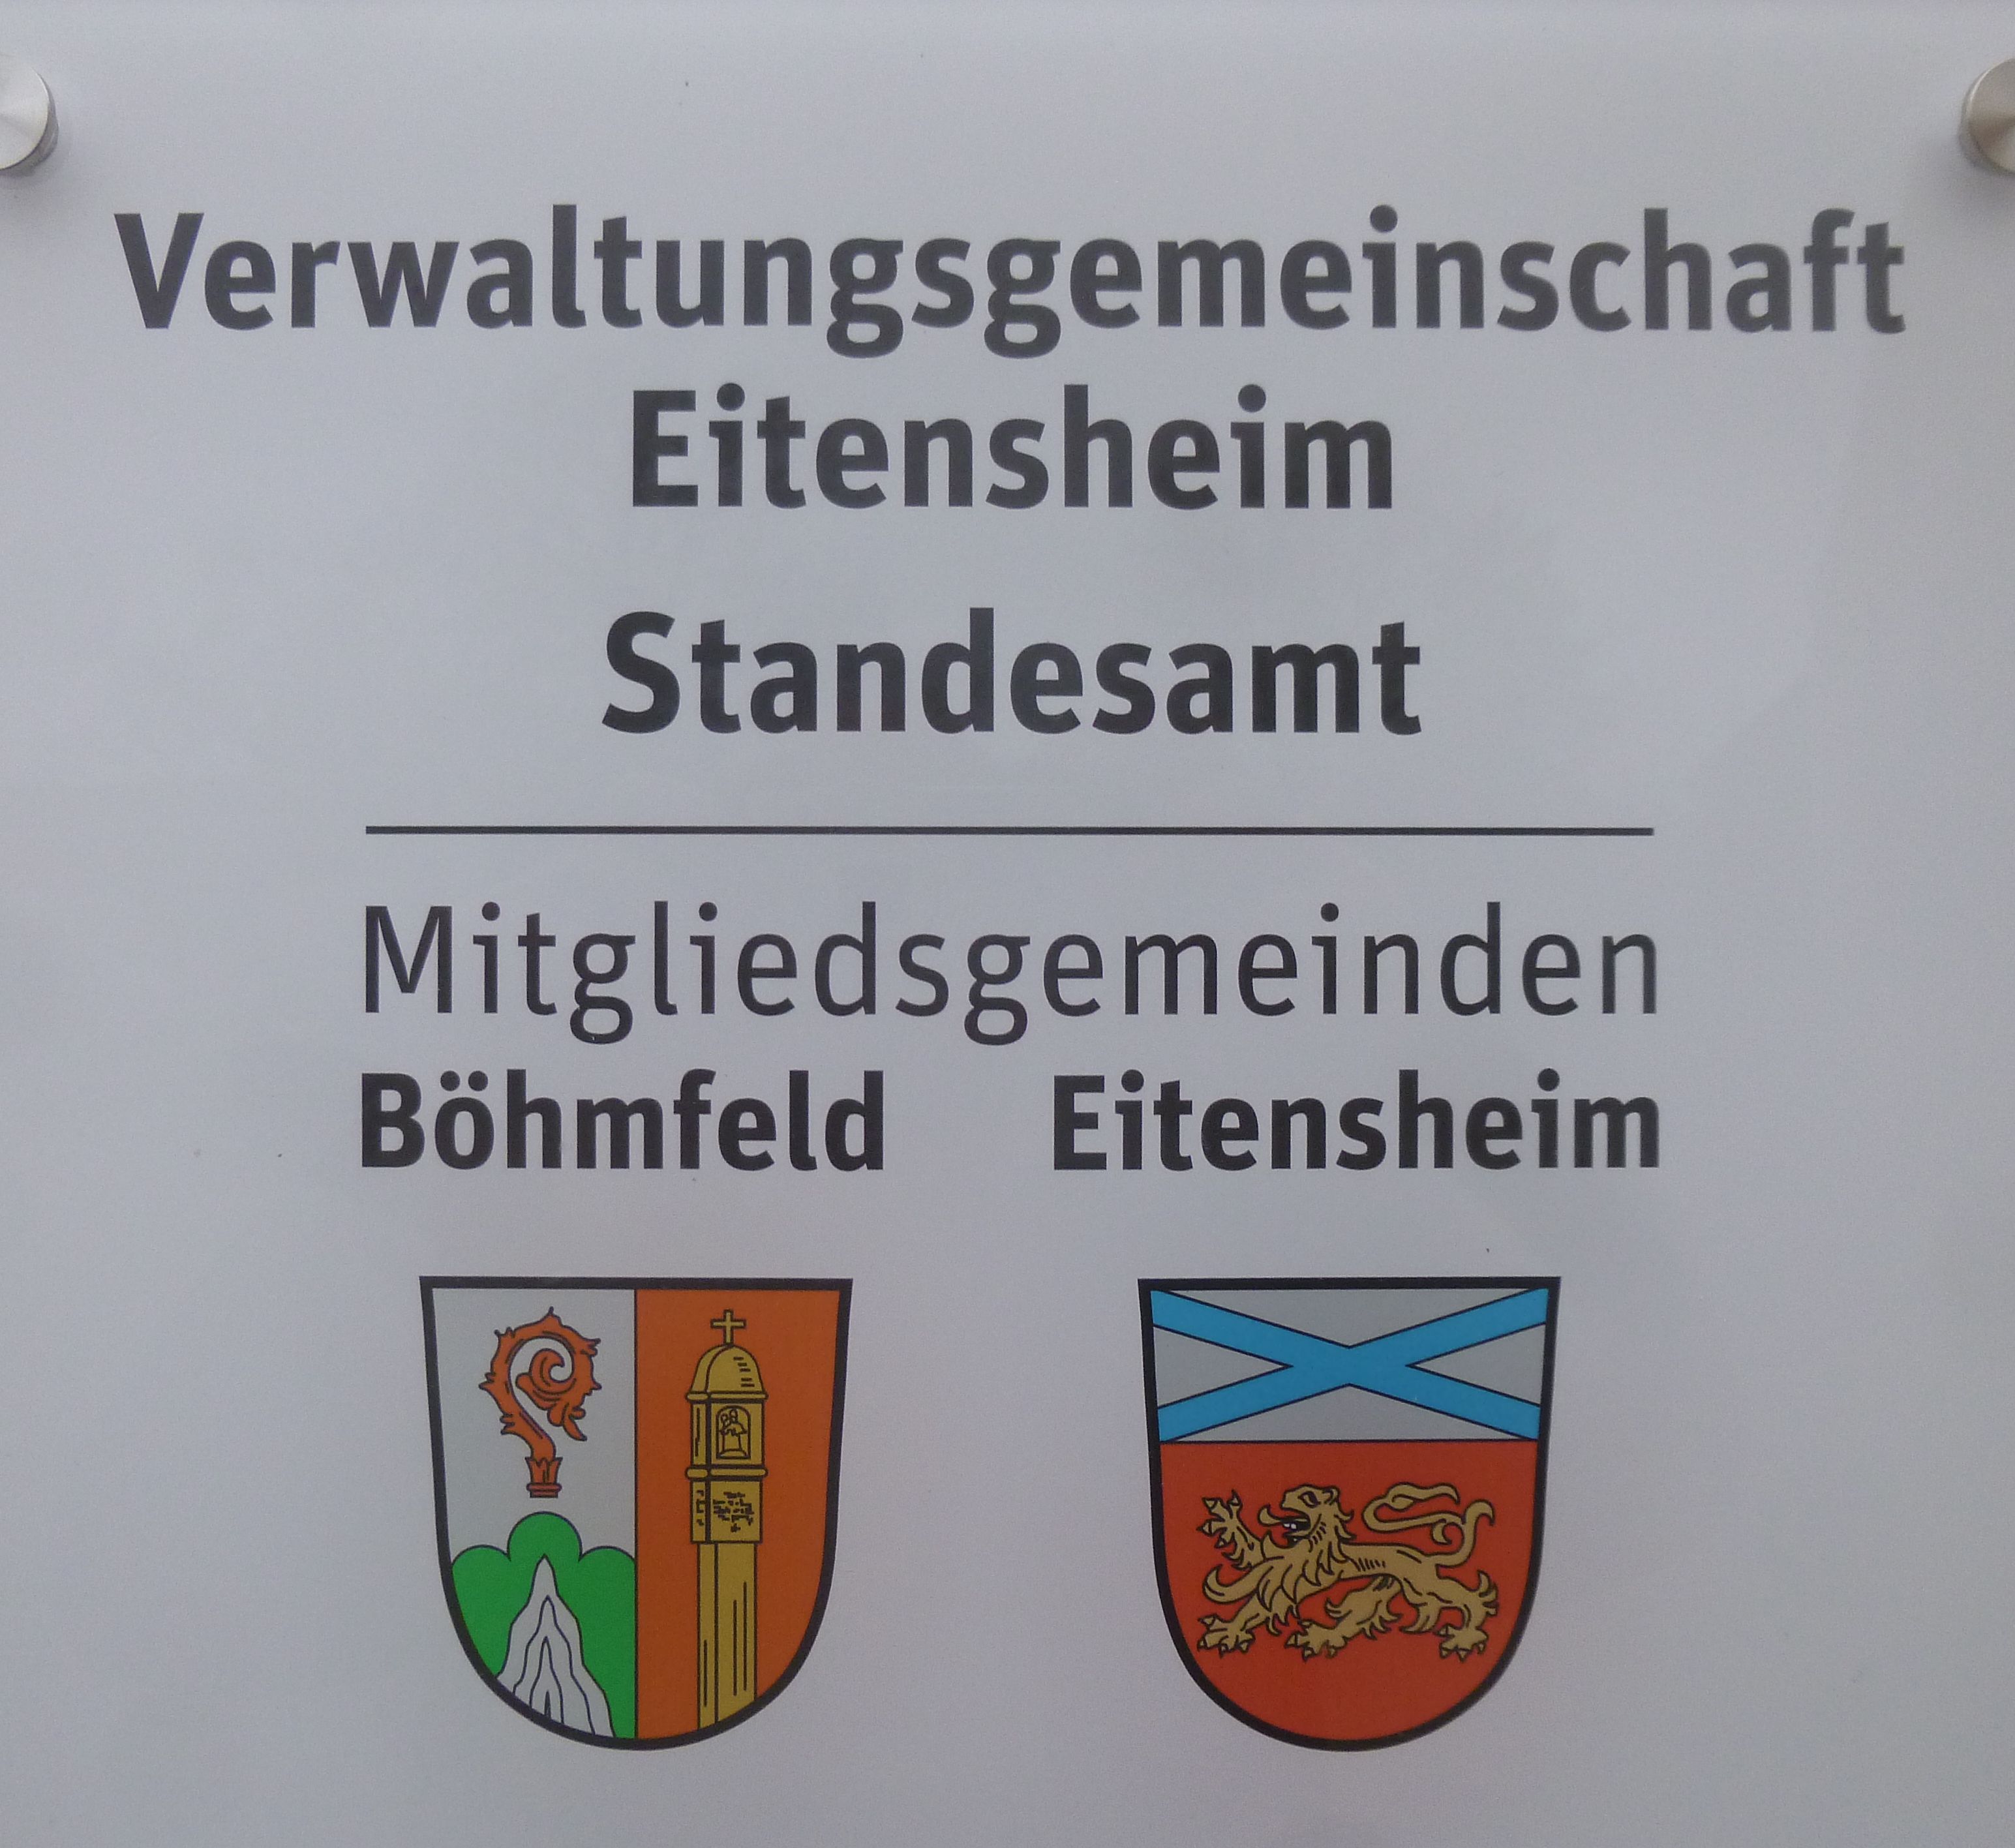 VG Eitensheim von 01. bis 03. Februar 2022 geschlossen